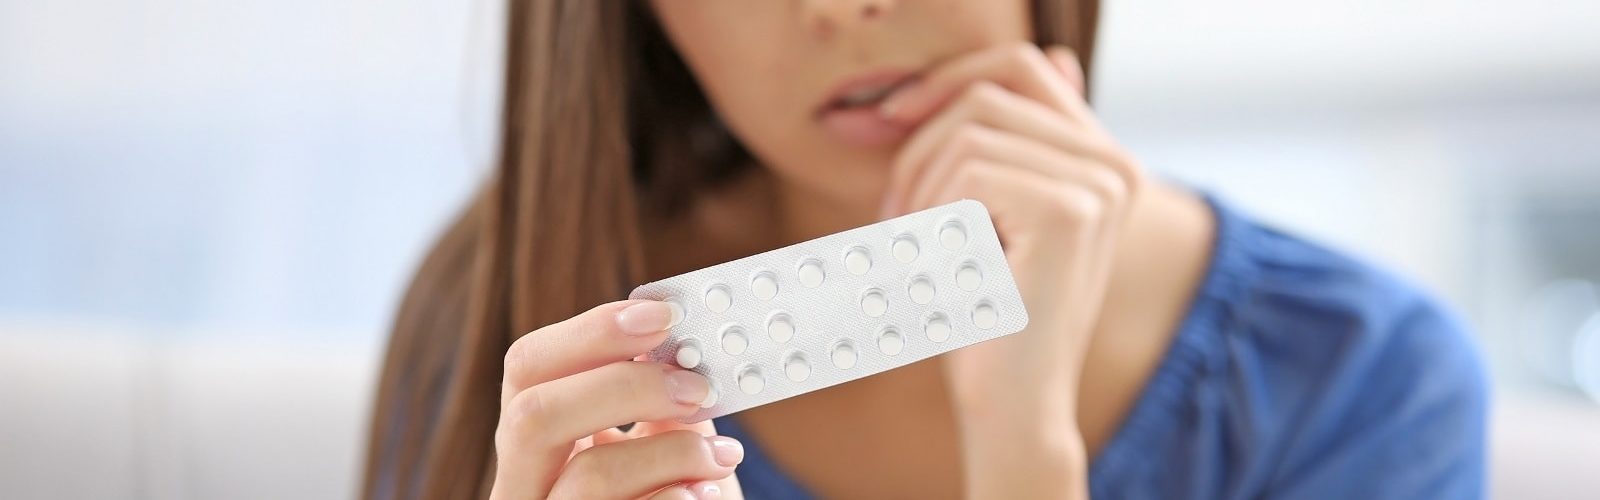 La pillola puo causare infertilita